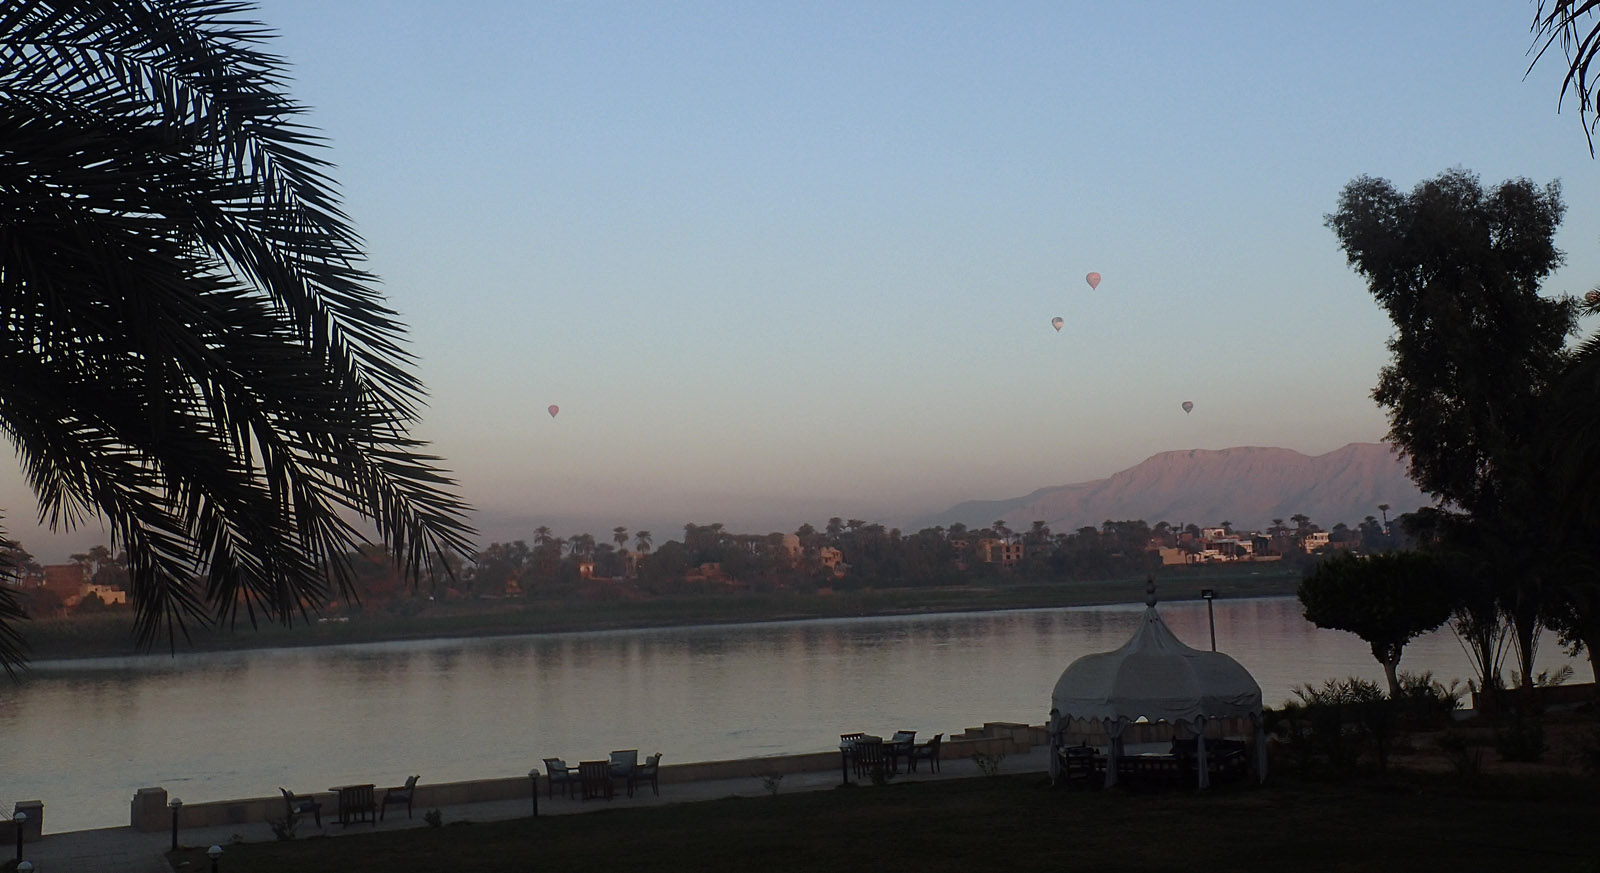 Balloons Luxor